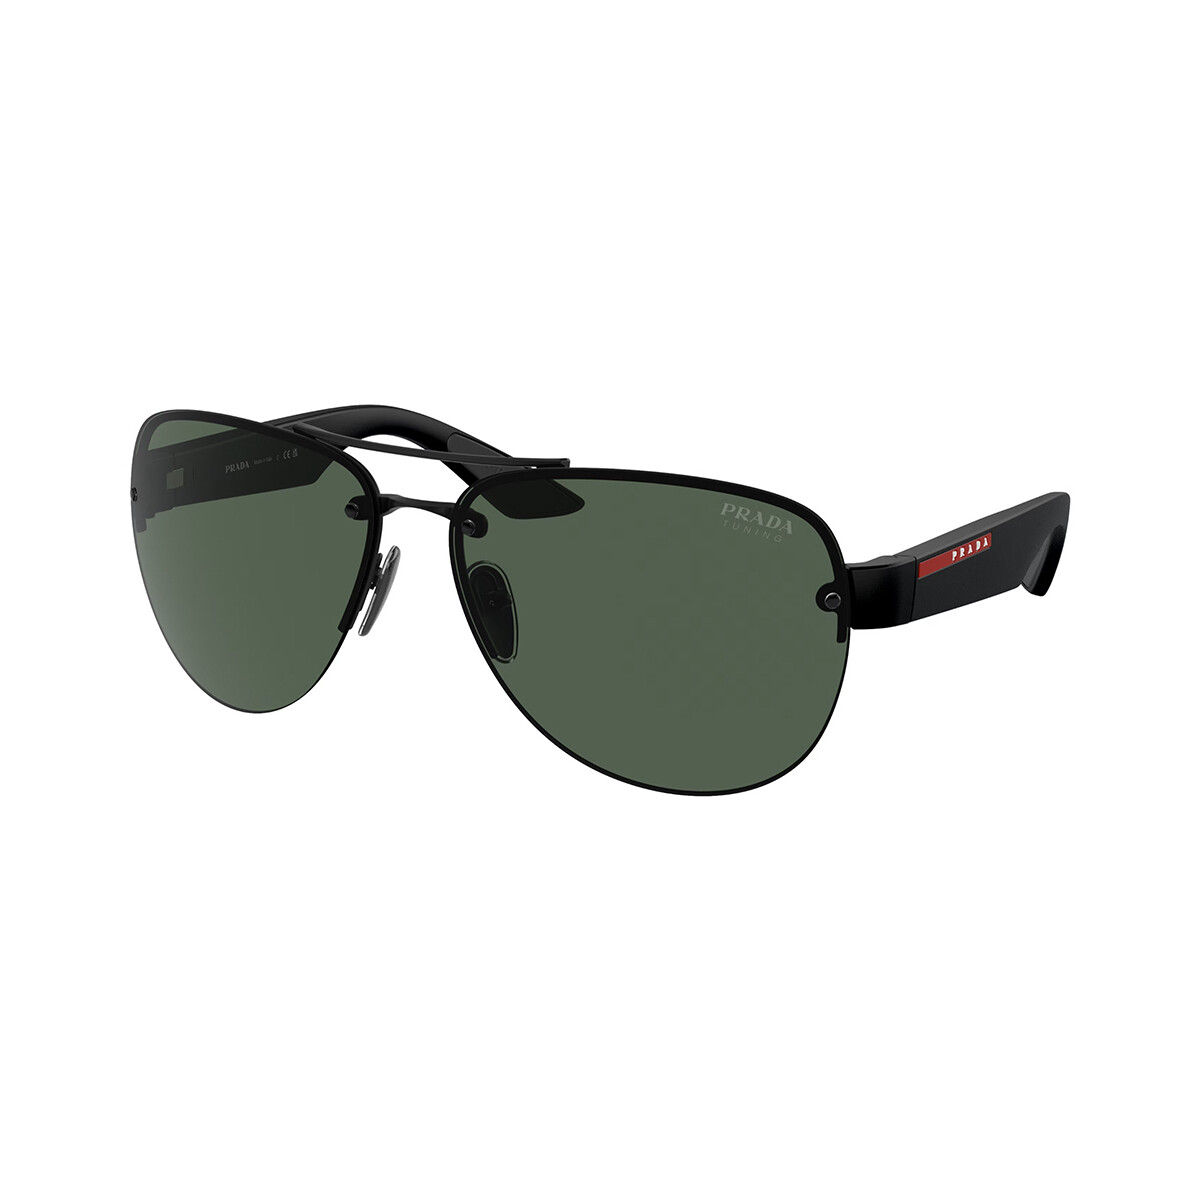 Orologi & Gioielli Uomo Occhiali da sole Prada PS 55YS Occhiali da sole, Nero/Verde, 64 mm Nero